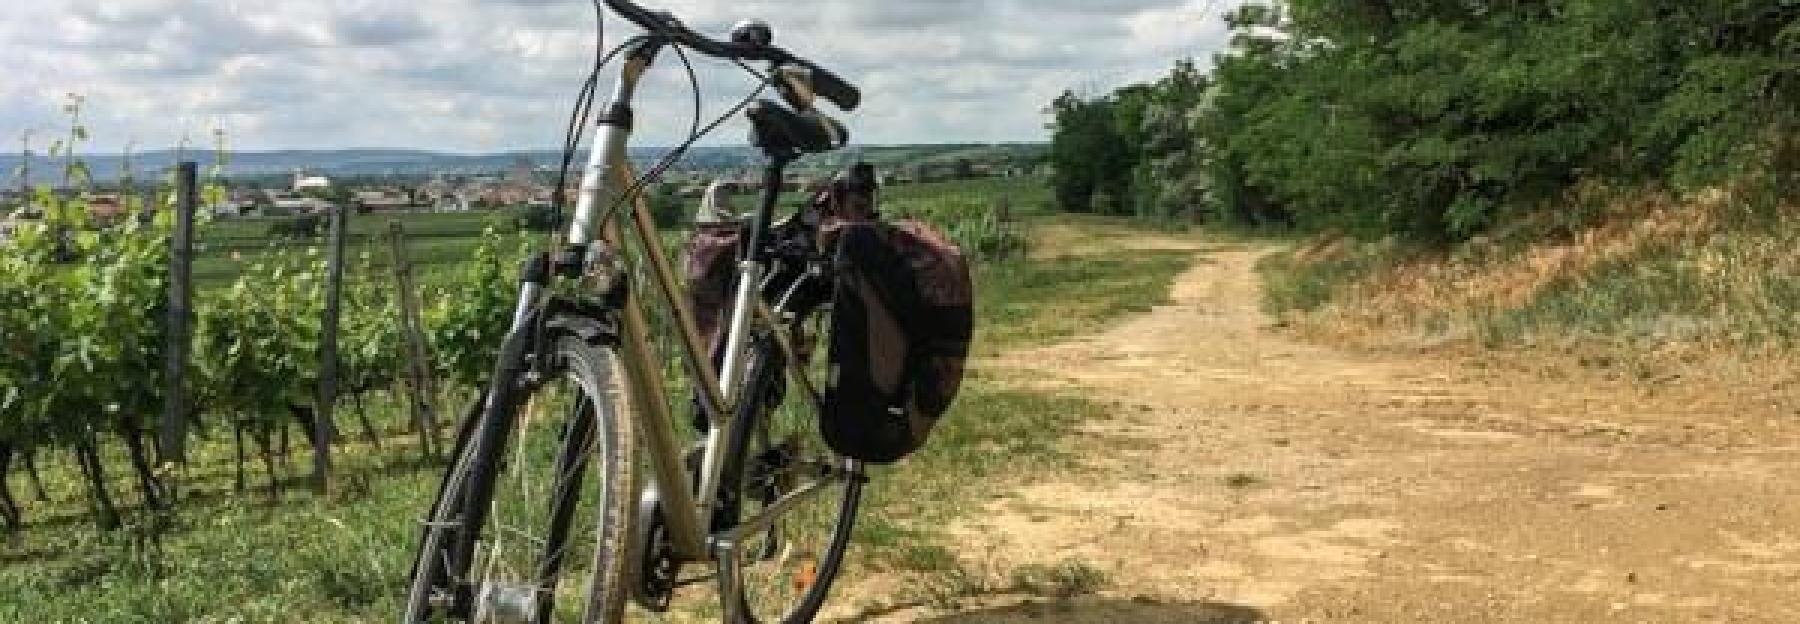 Fahrrad am Rand eines Weingartens